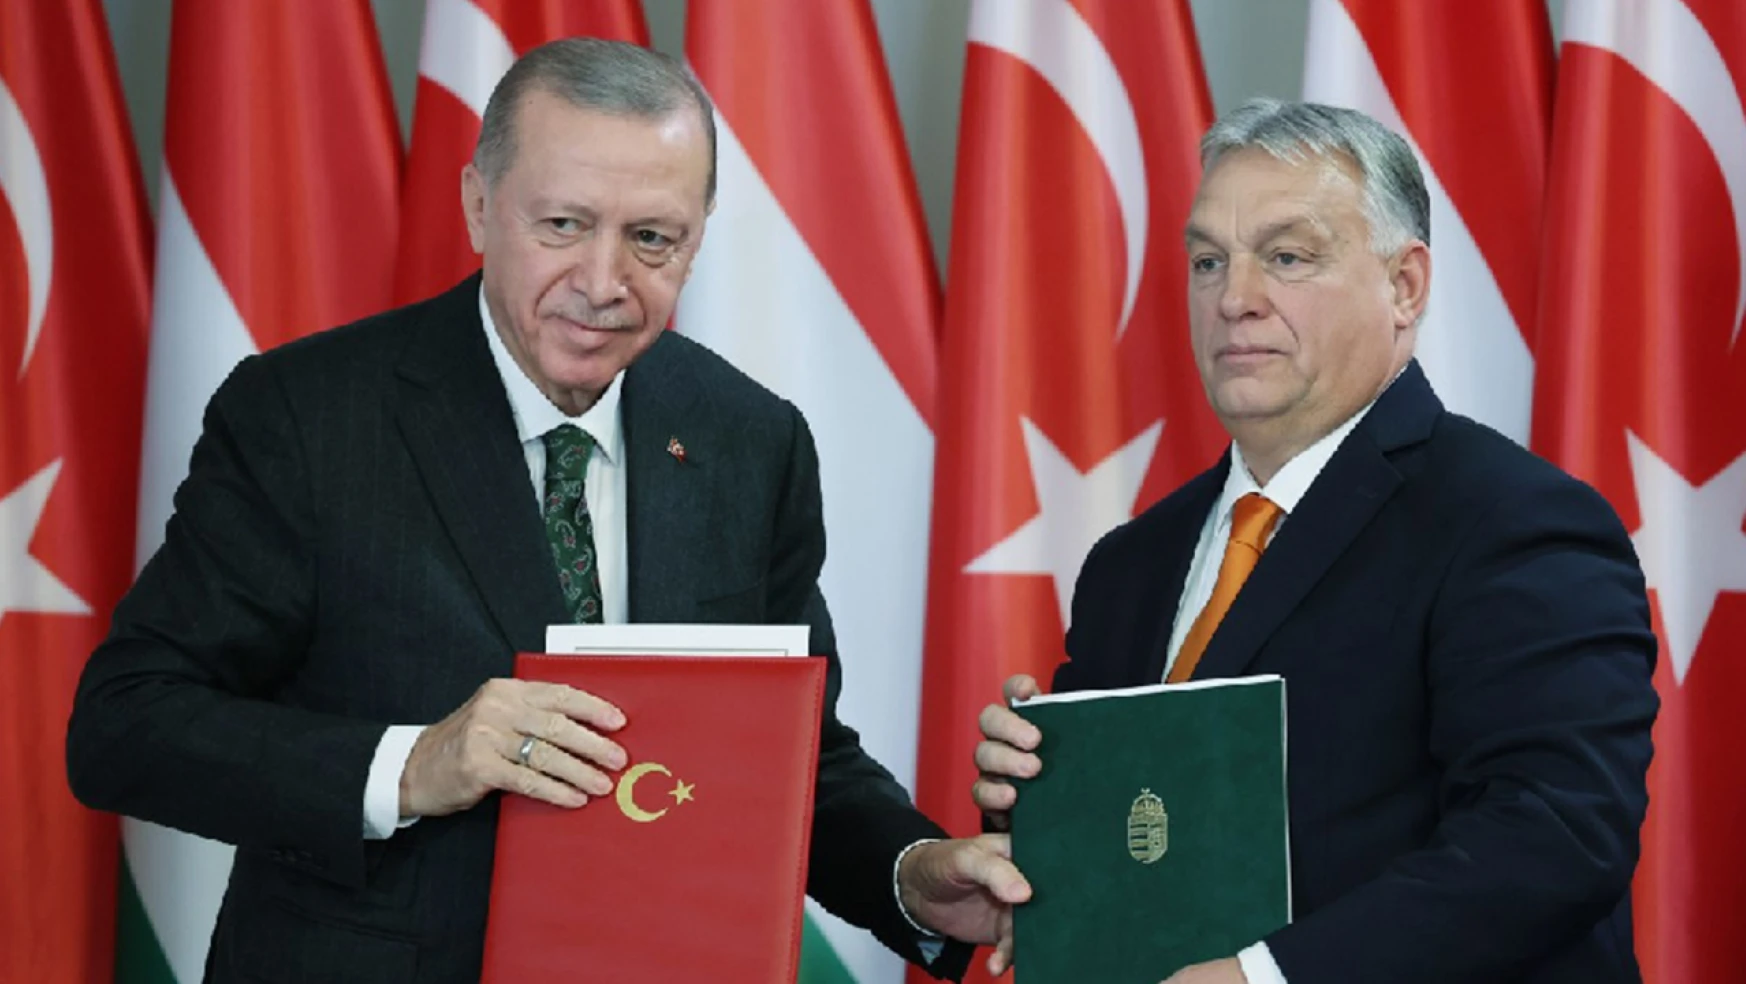 Macaristan ile iş birliği anlaşmaları imzalandı